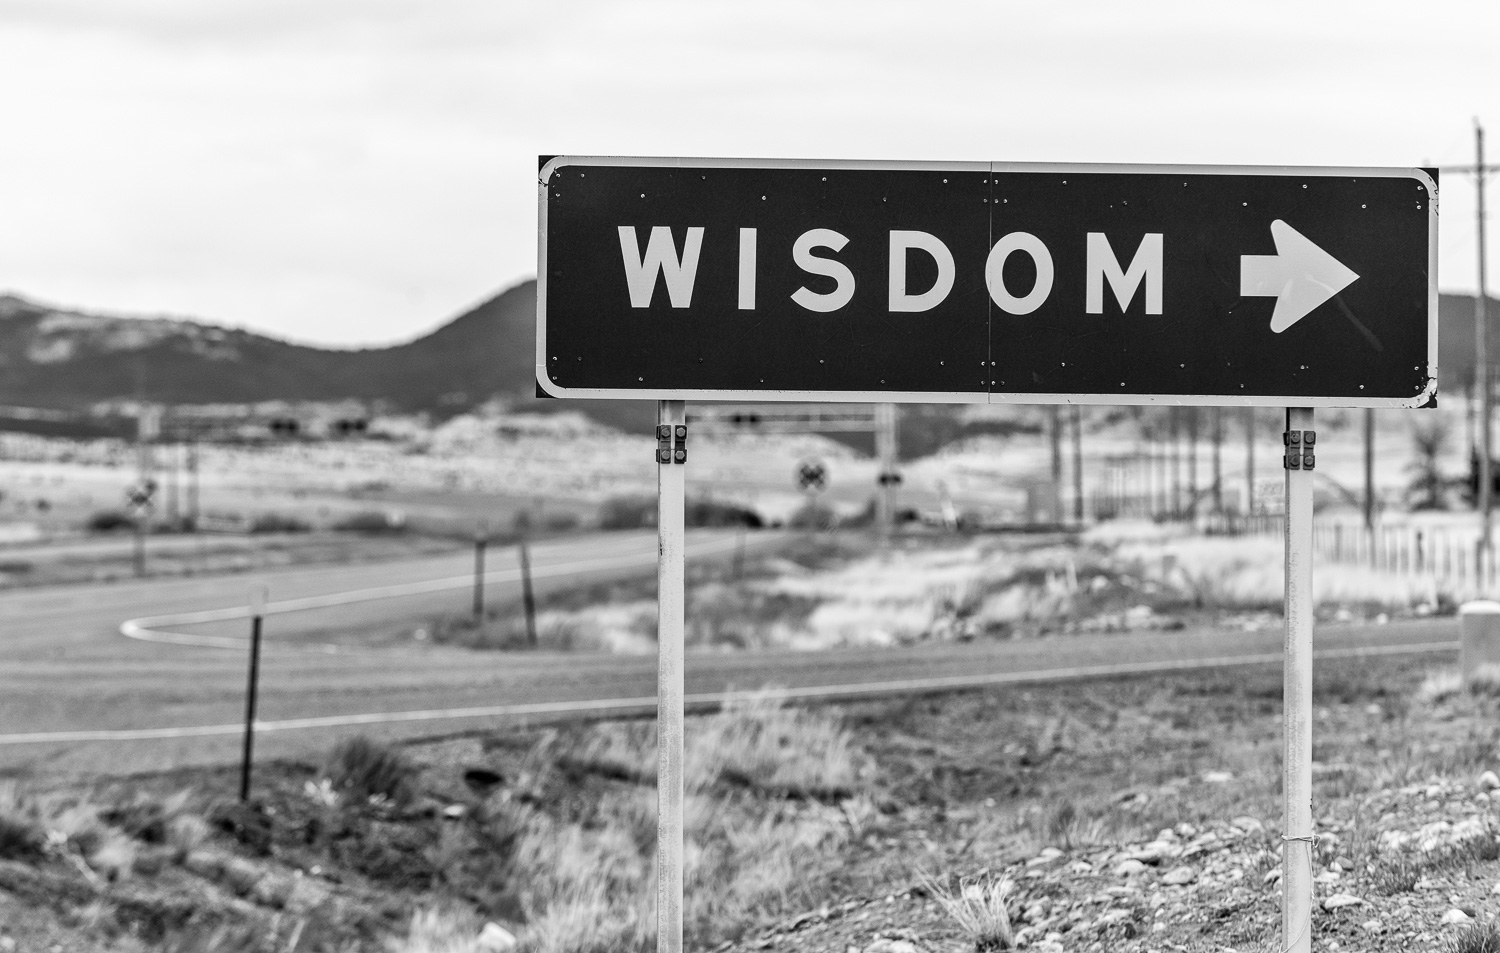 The Road to Wisdom, Near Wisdom, Utah